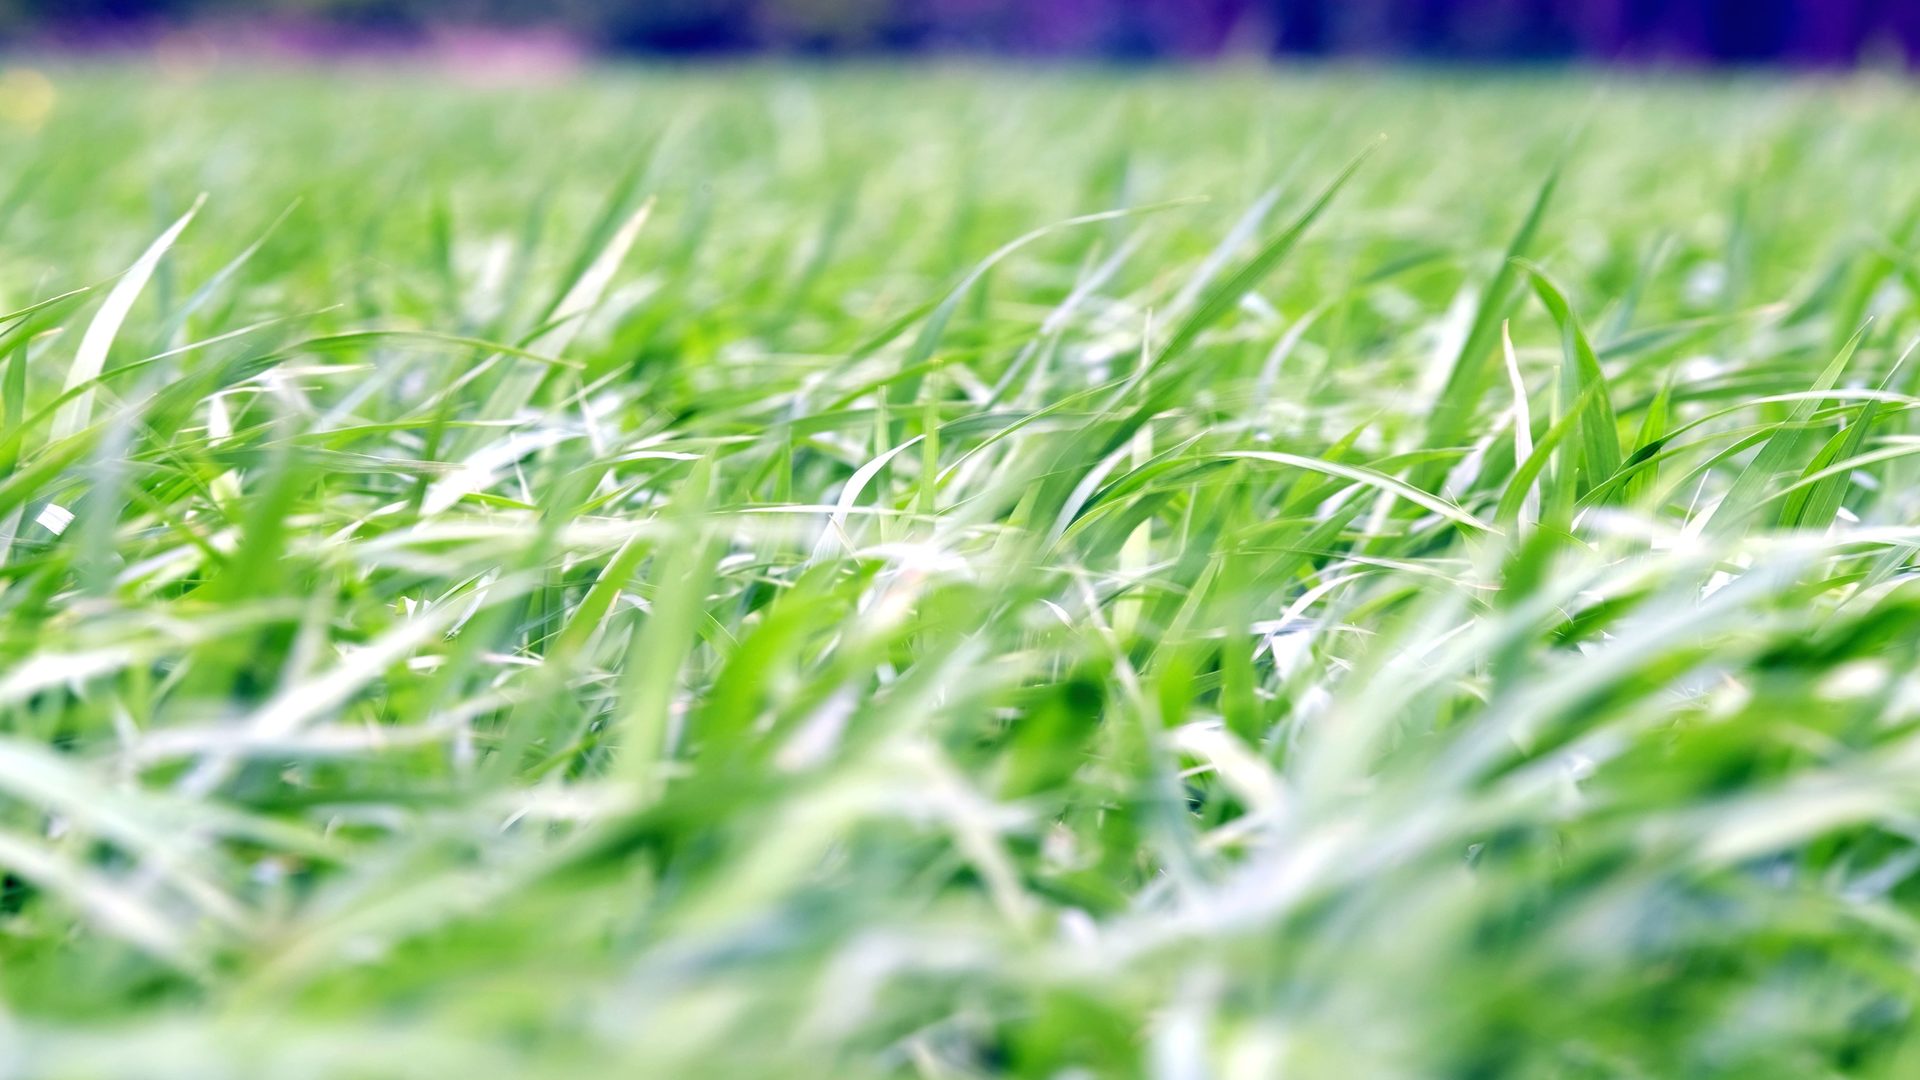 Hình ảnh nền cỏ xanh